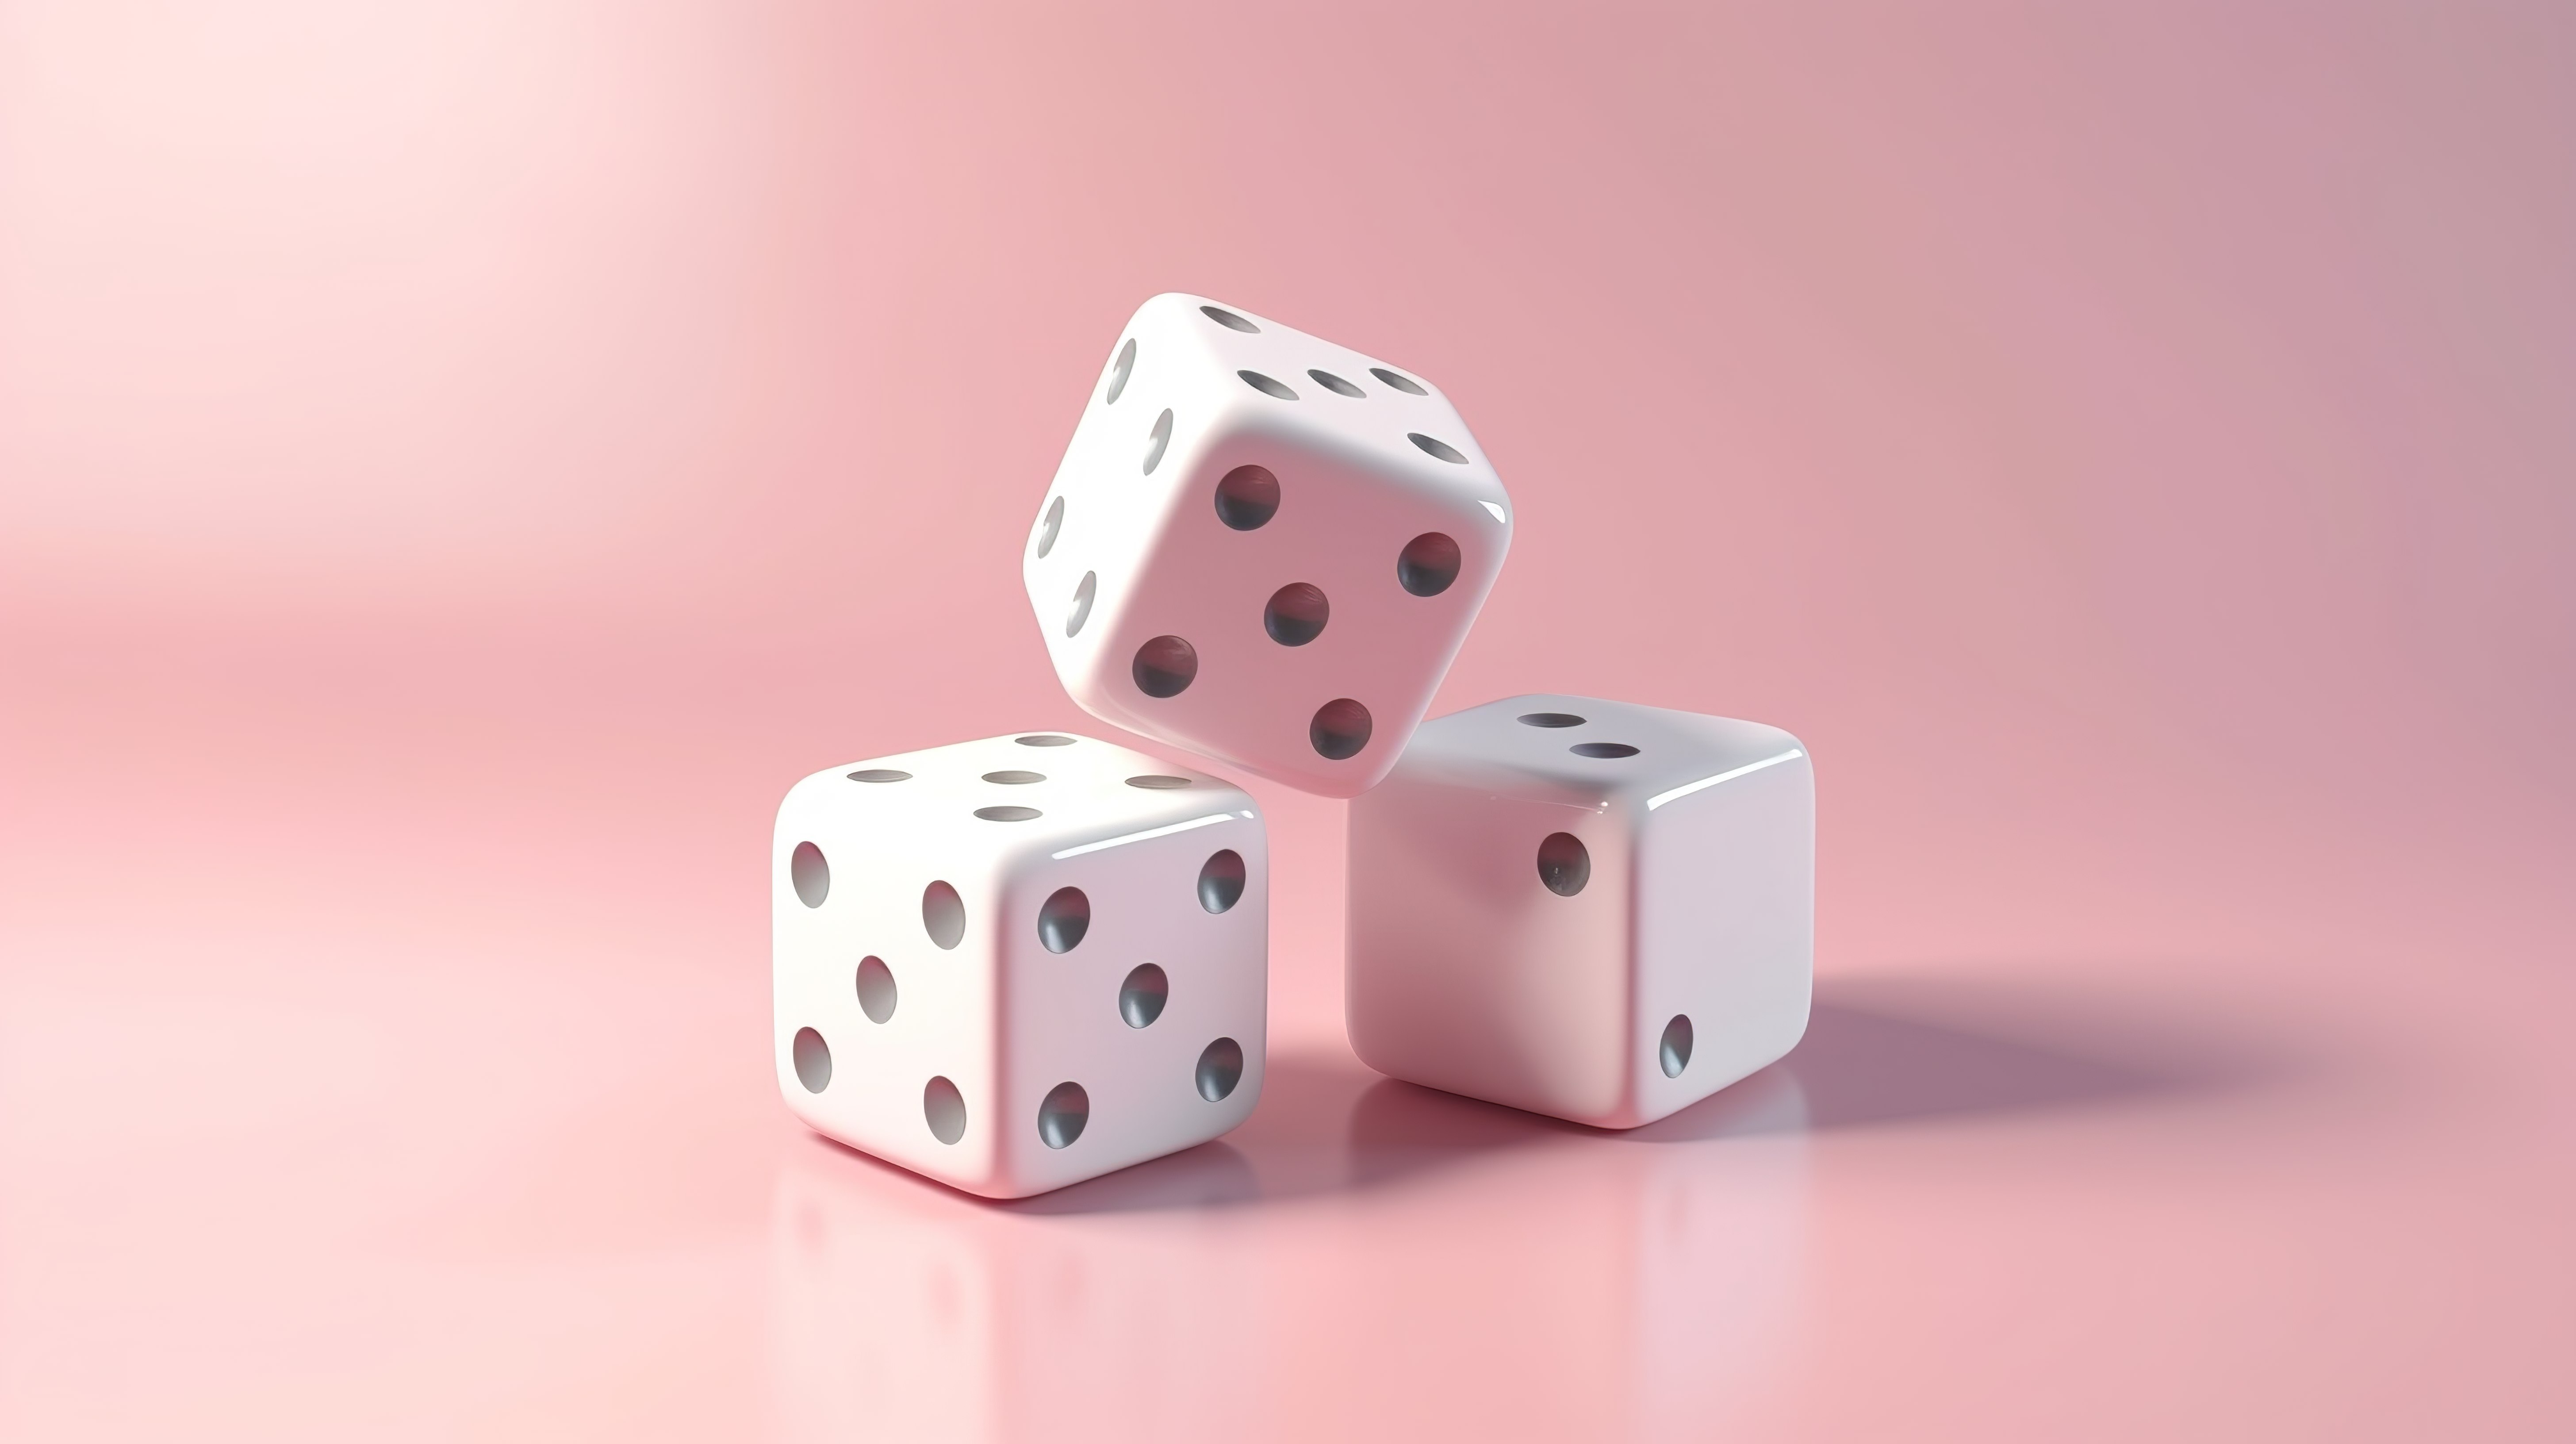 漂浮在粉红色柔和背景上的两个白色骰子的简约 3D 渲染广告概念组合模板图片